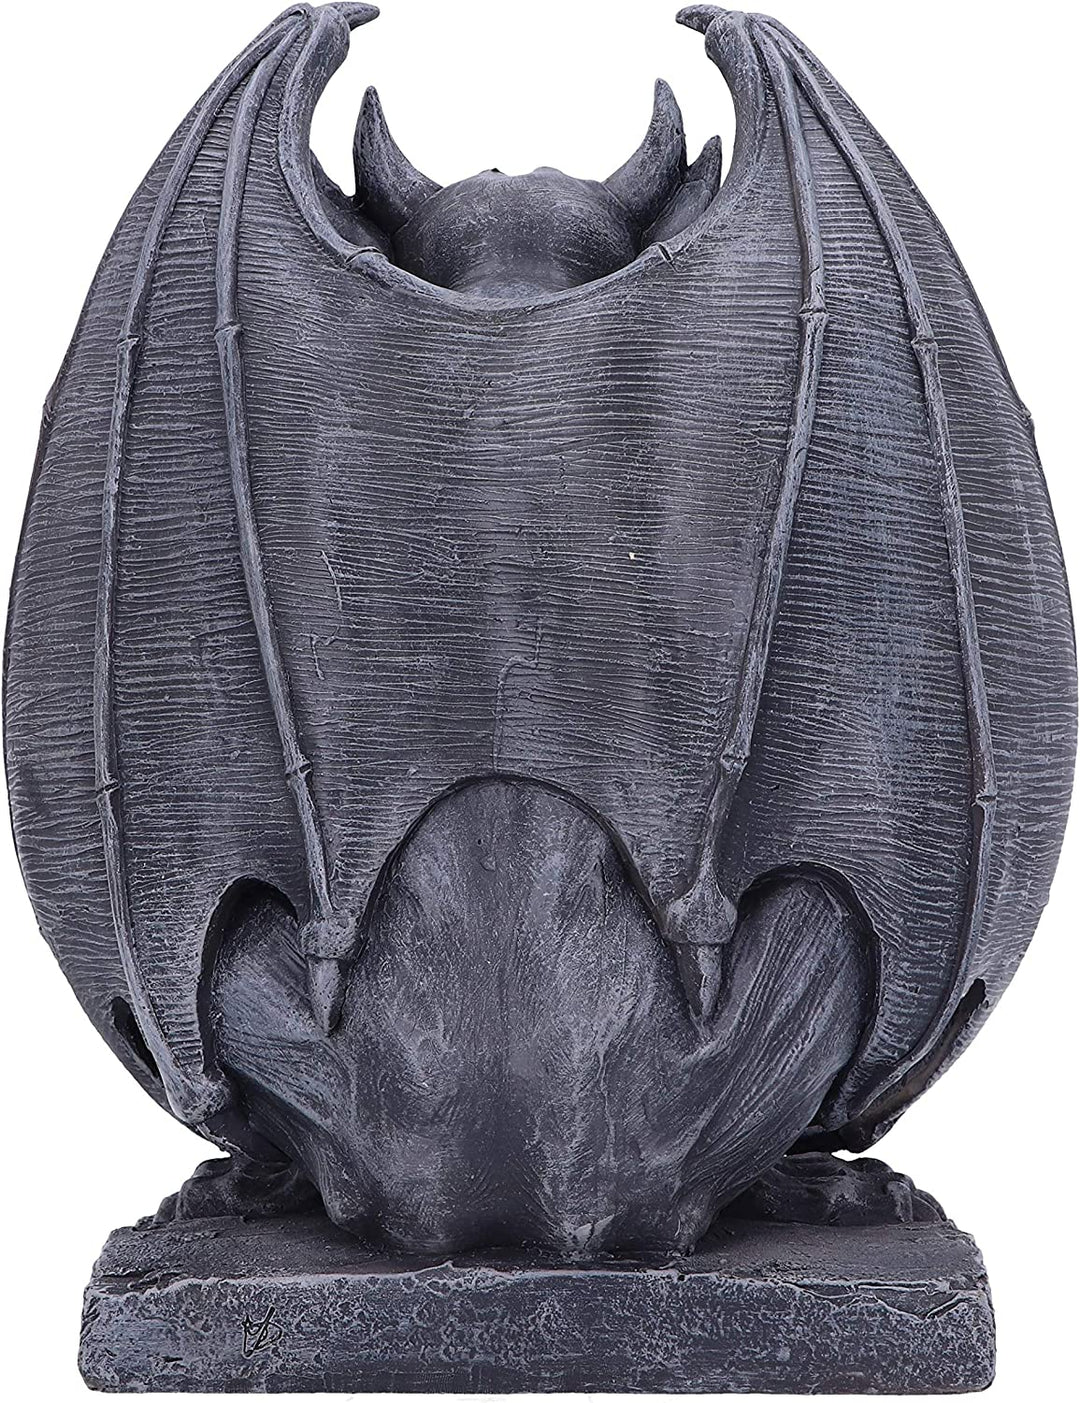 Nemesis Now Adalward Dark Black Grotesque Gargoyle Figurine, 26cm